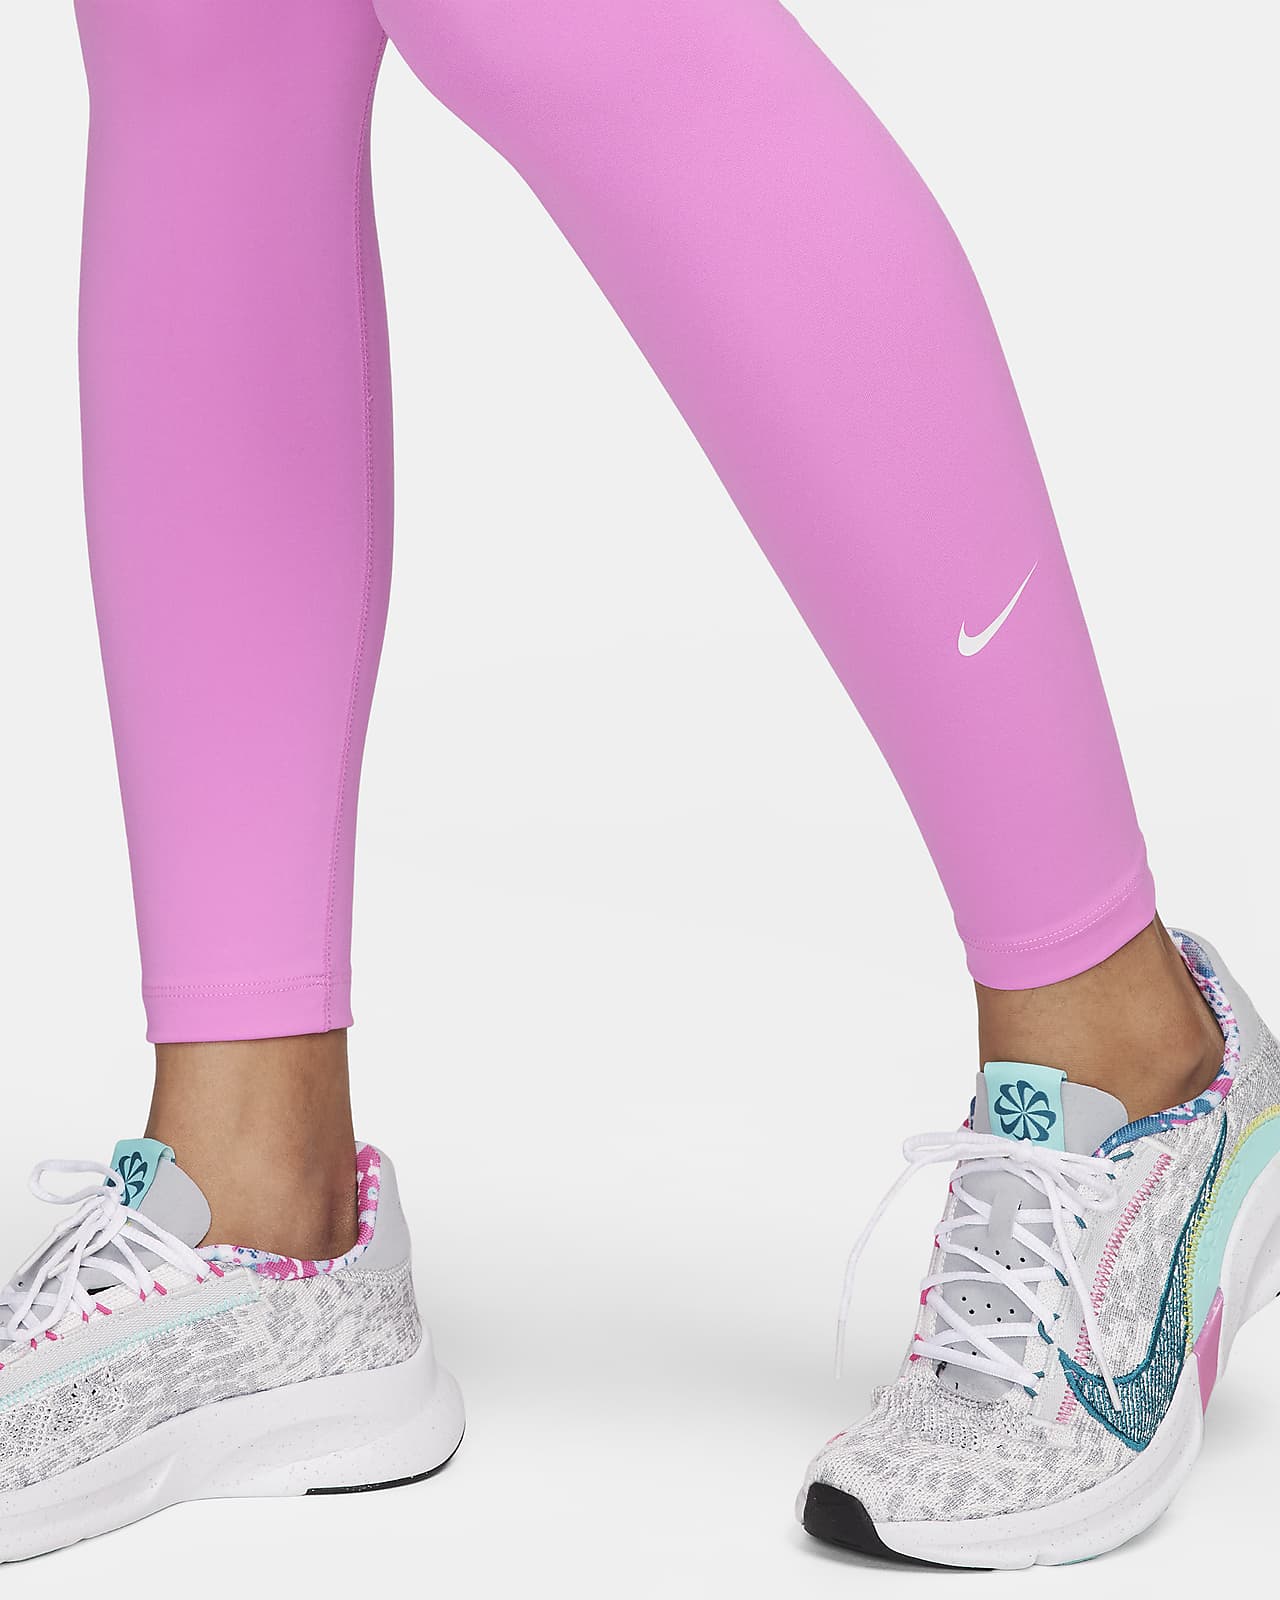 Nike One Women's High-Rise Leggings. Nike LU